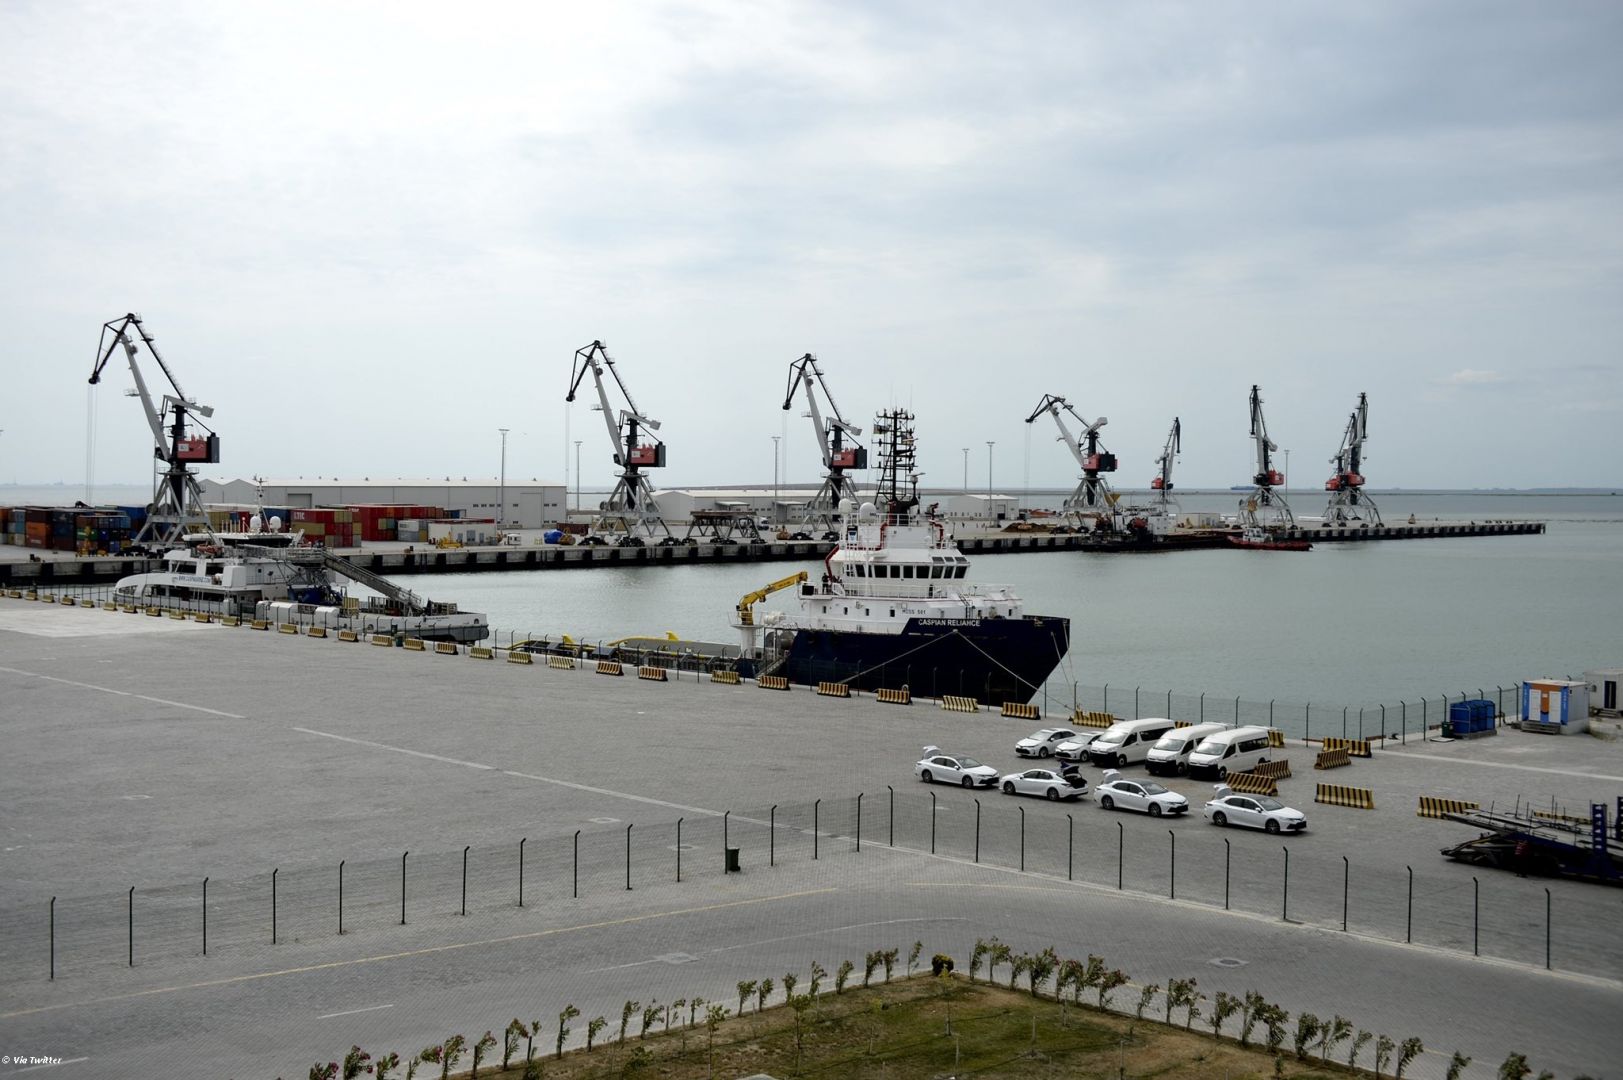 Le Port de Bakou recevra un soutien dans le cadre du Plan économique et d'investissement de l'Union européenne